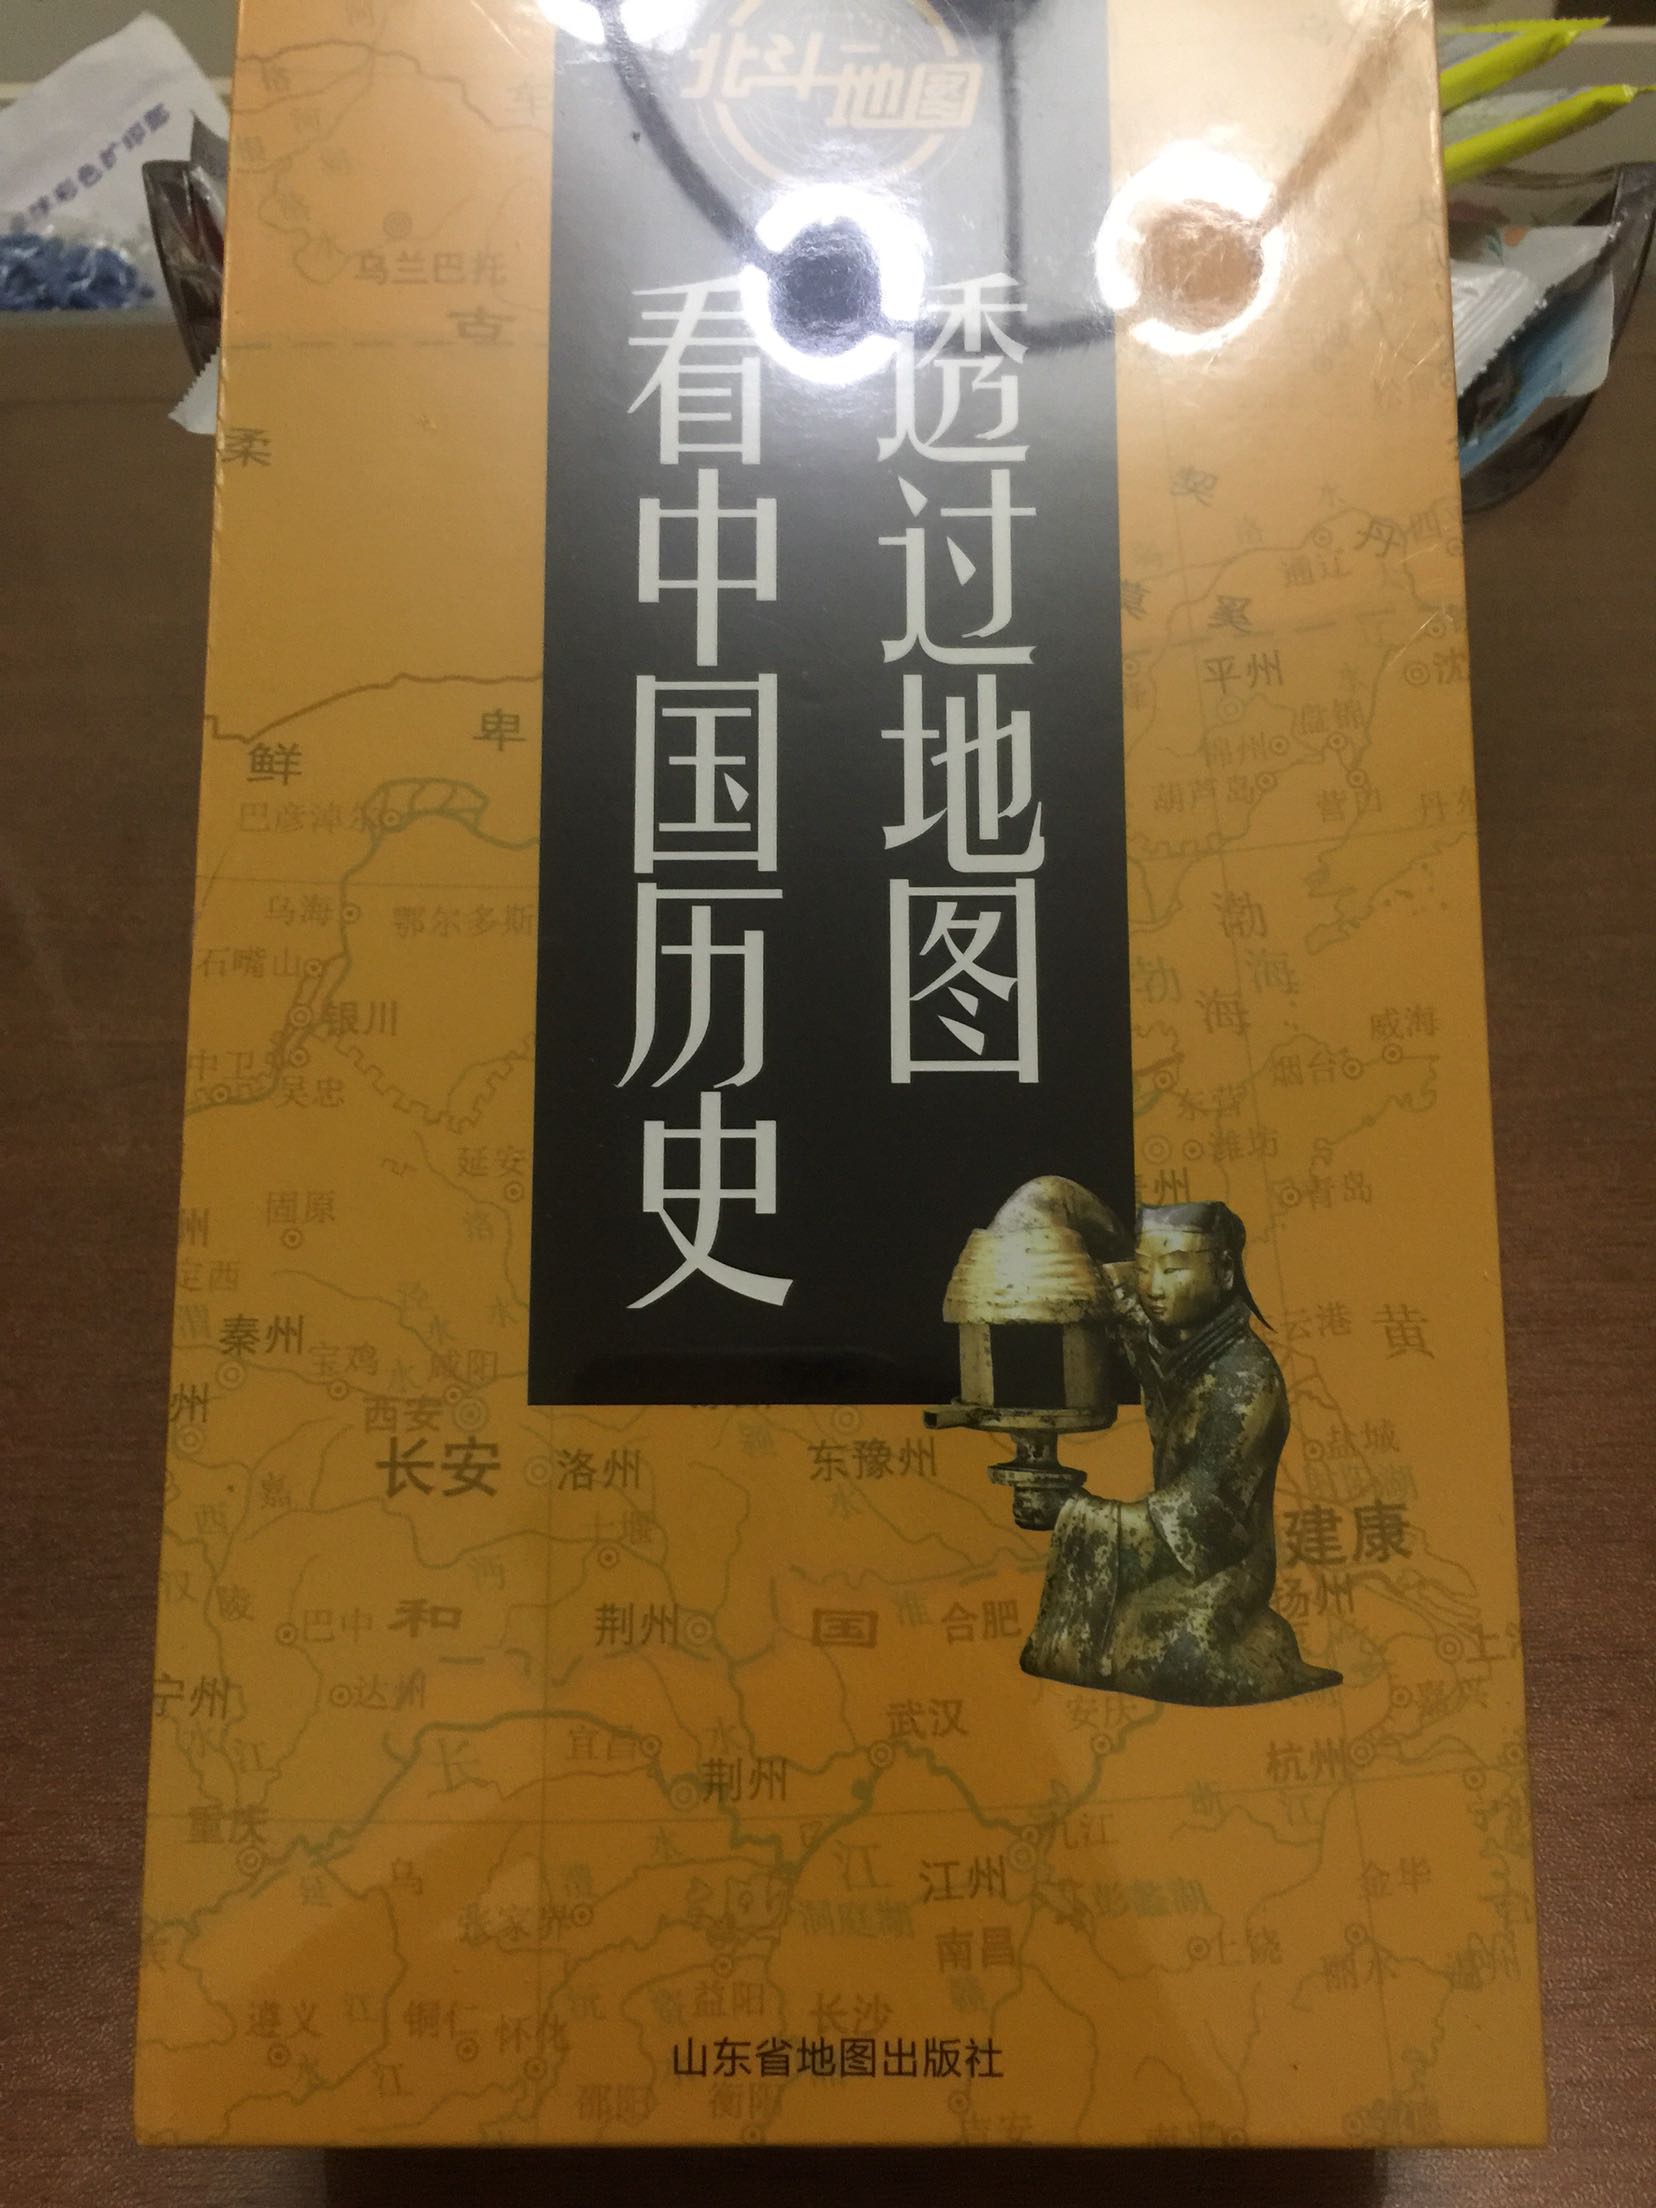 非常好的一套书对中国的历史有了更深入的了解